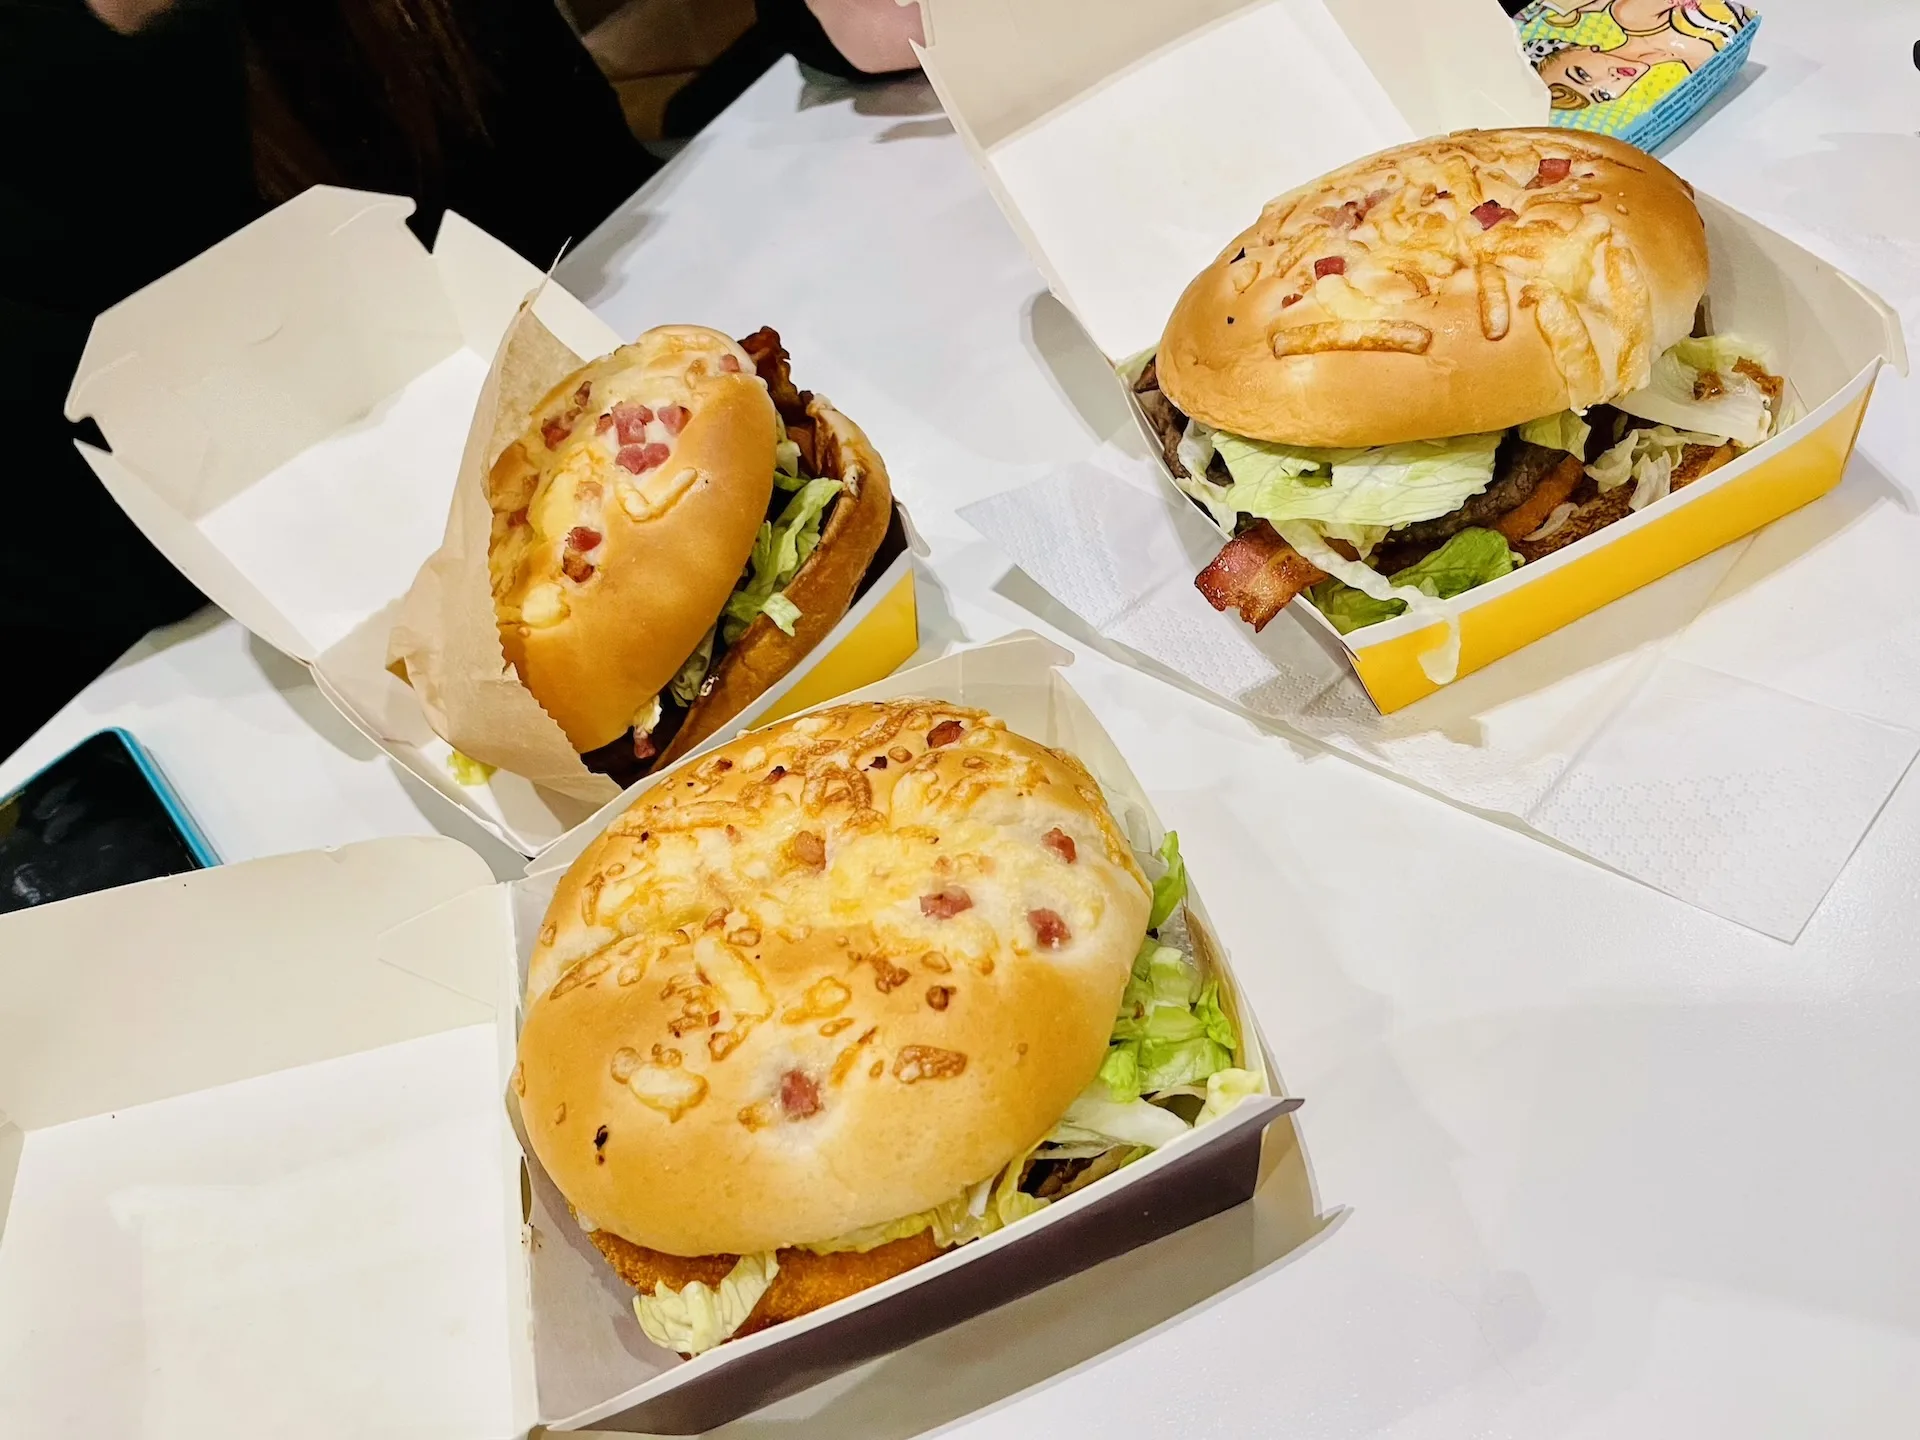 Kiedy Burger Drwala 2023? Podobno burger ma pojawić się wcześniej? Ile będzie kosztował Burger Drwala w 2023 roku?